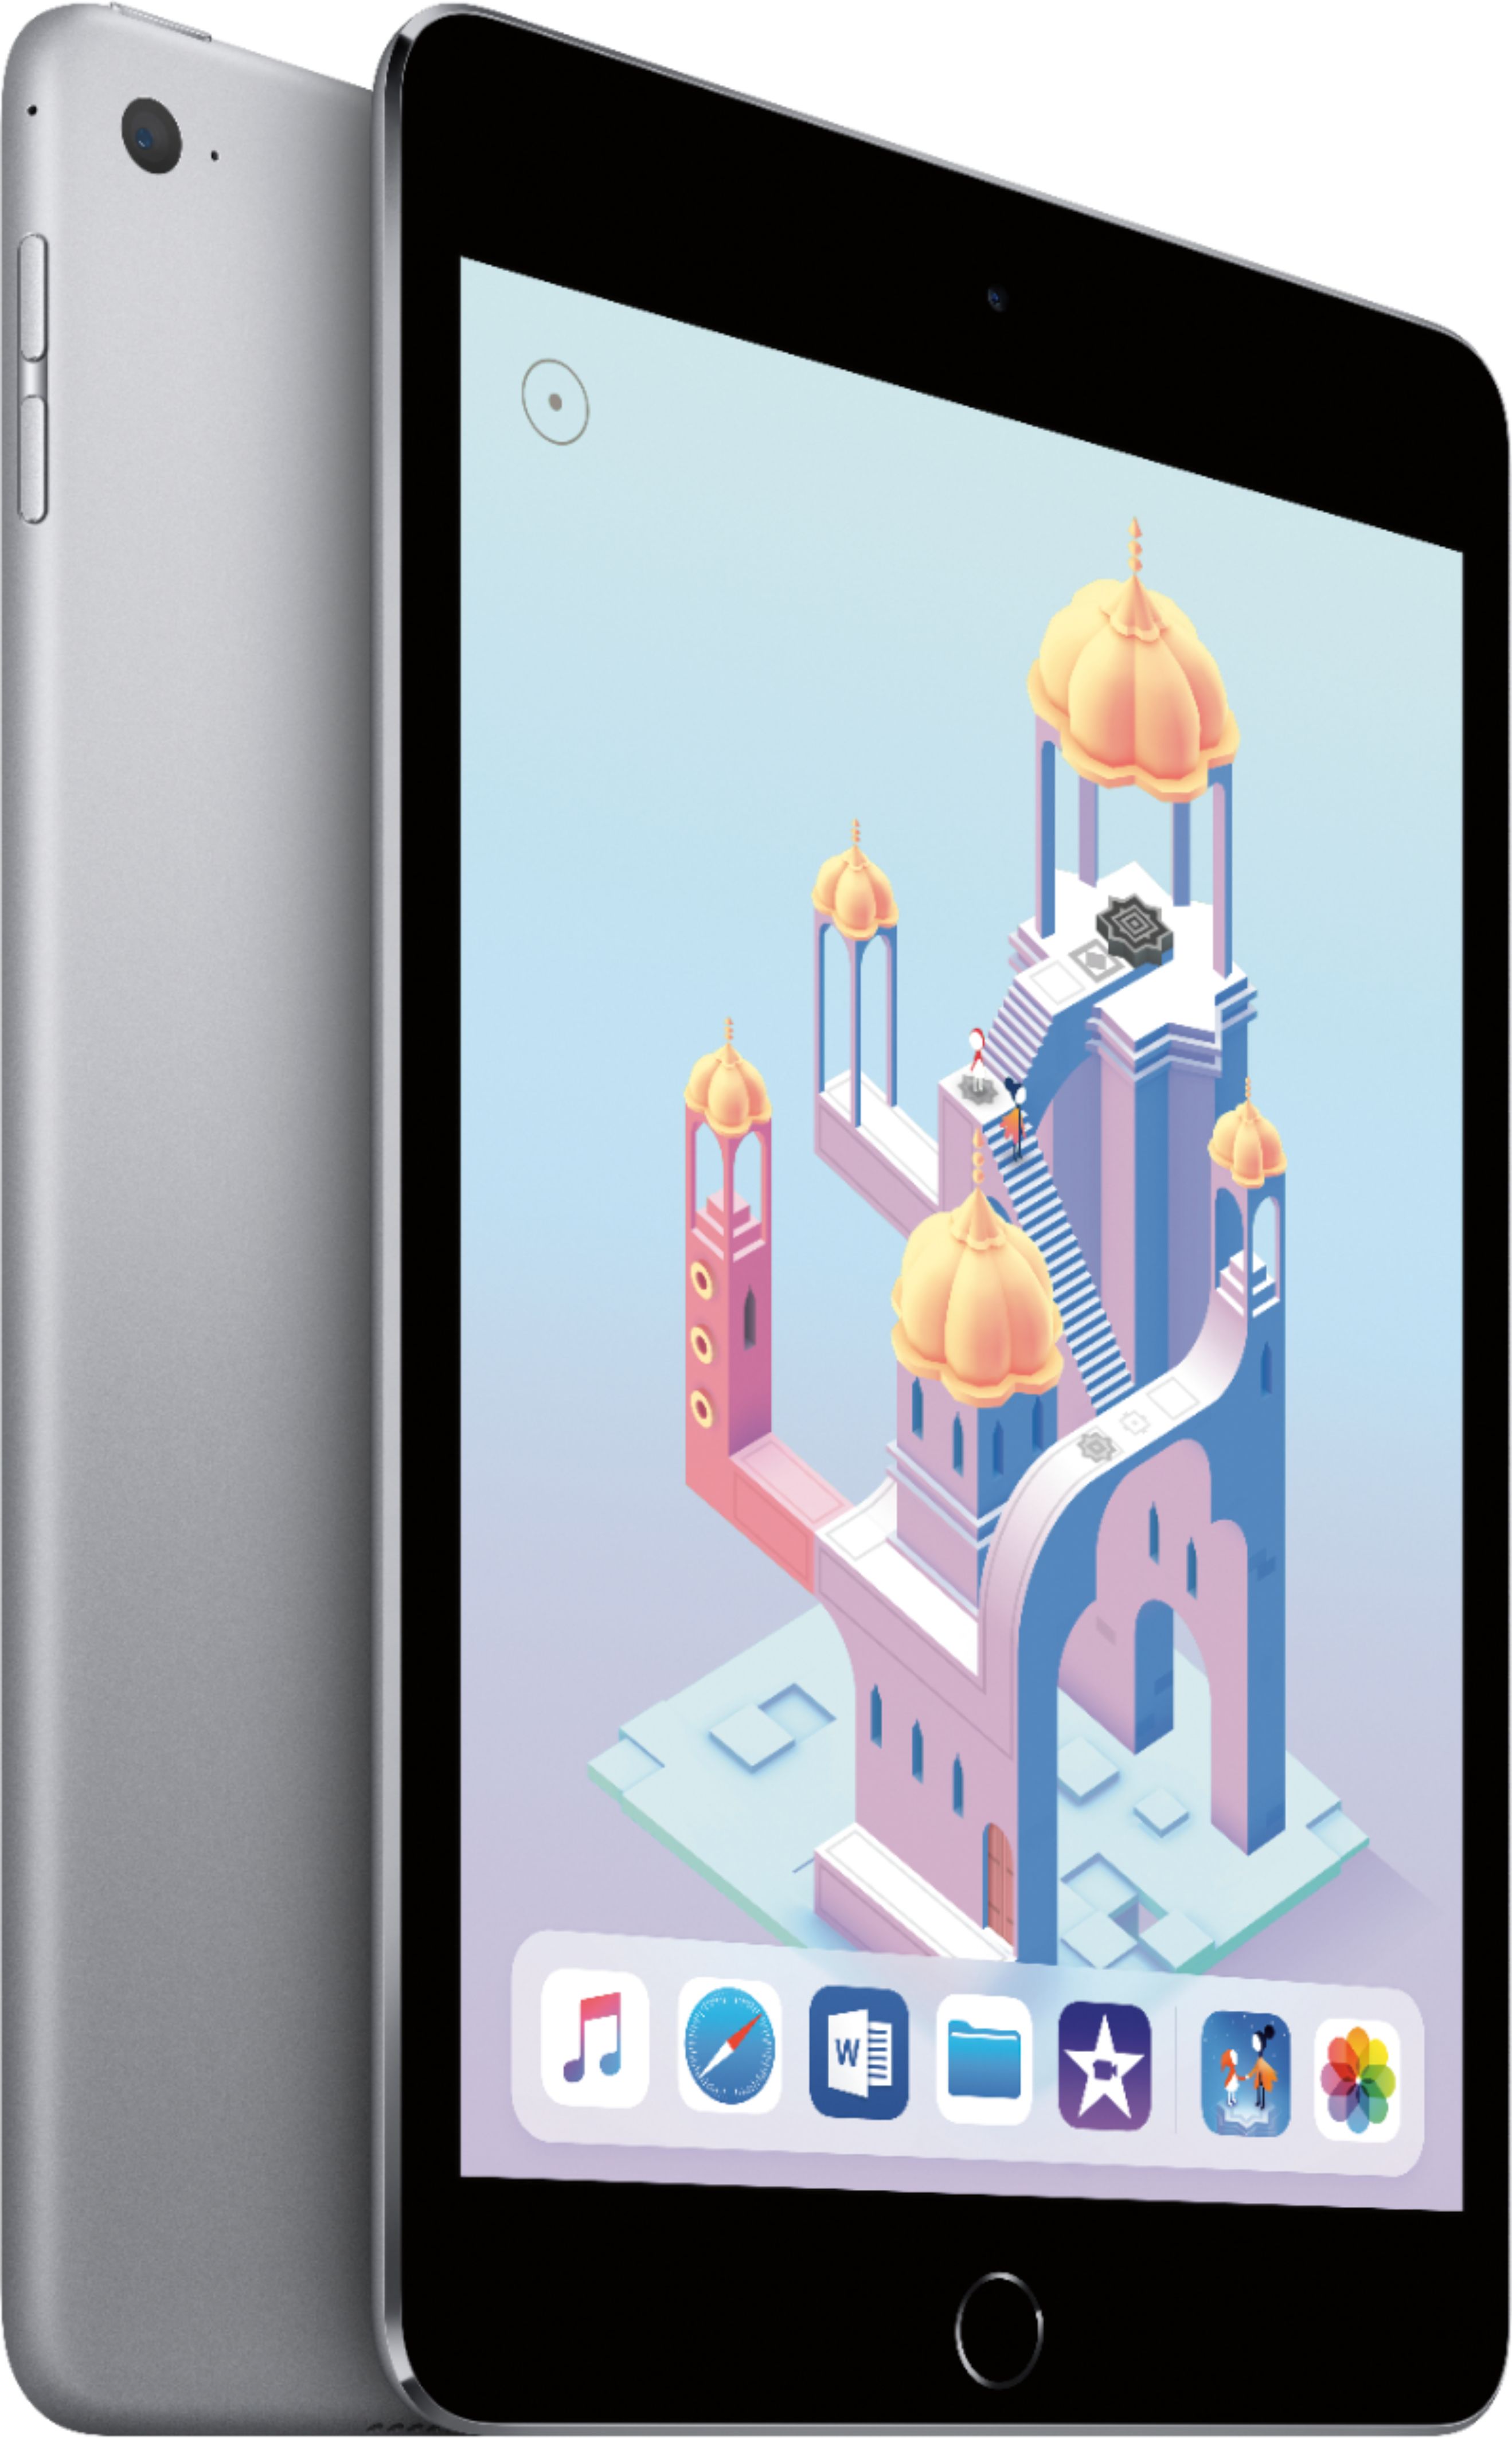 Apple iPad mini 4 Wi-Fi 128GB Space Gray MK9N2LL/A - Best Buy